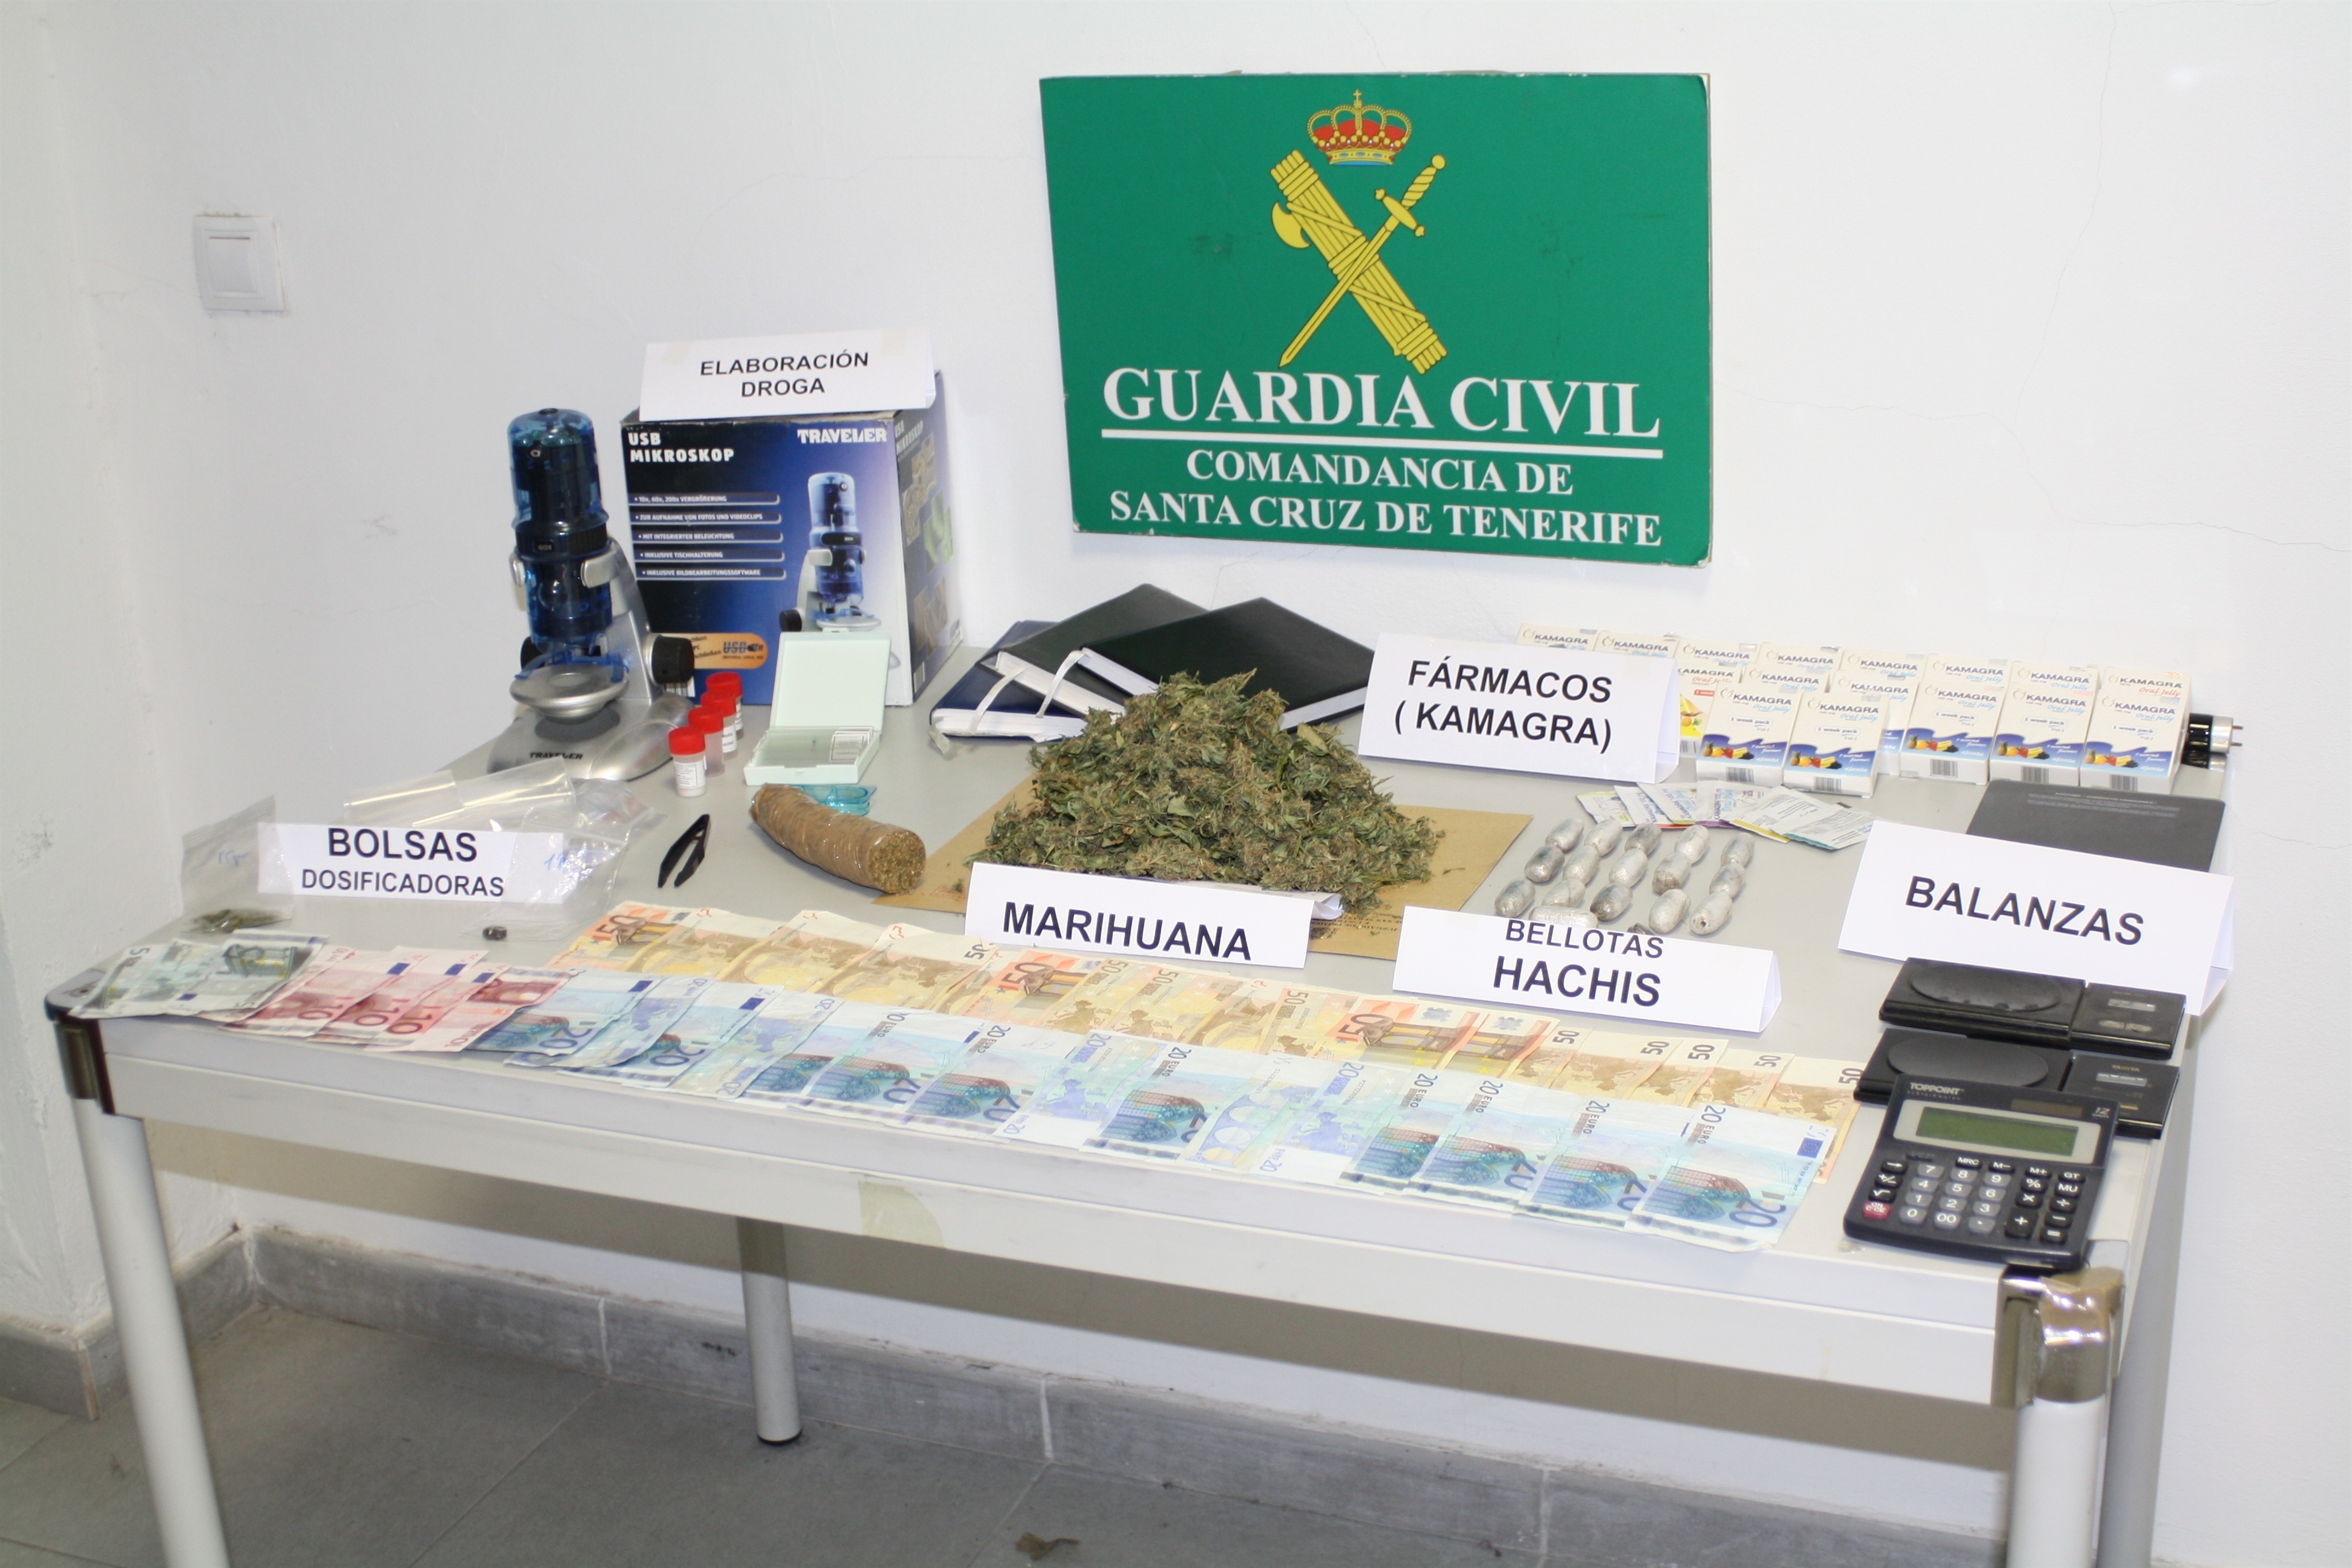 La Guardia Civil detiene a 4 personas por vender y traficar con droga en Canarias